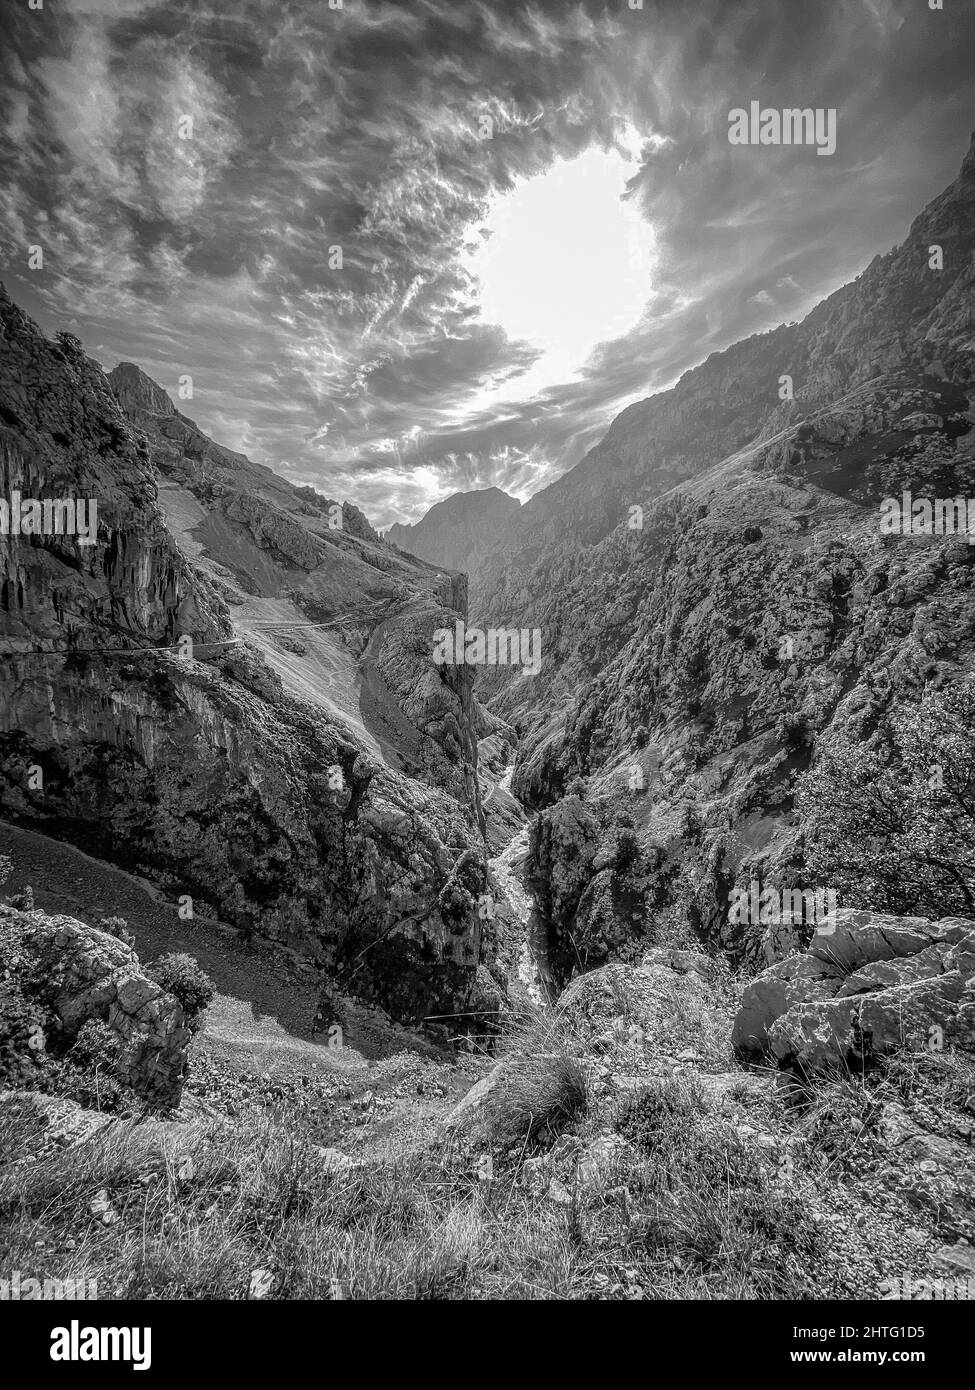 Foto verticale in scala di grigi del famoso sentiero Cares, Parco Nazionale Picos de Europa, Spagna Foto Stock